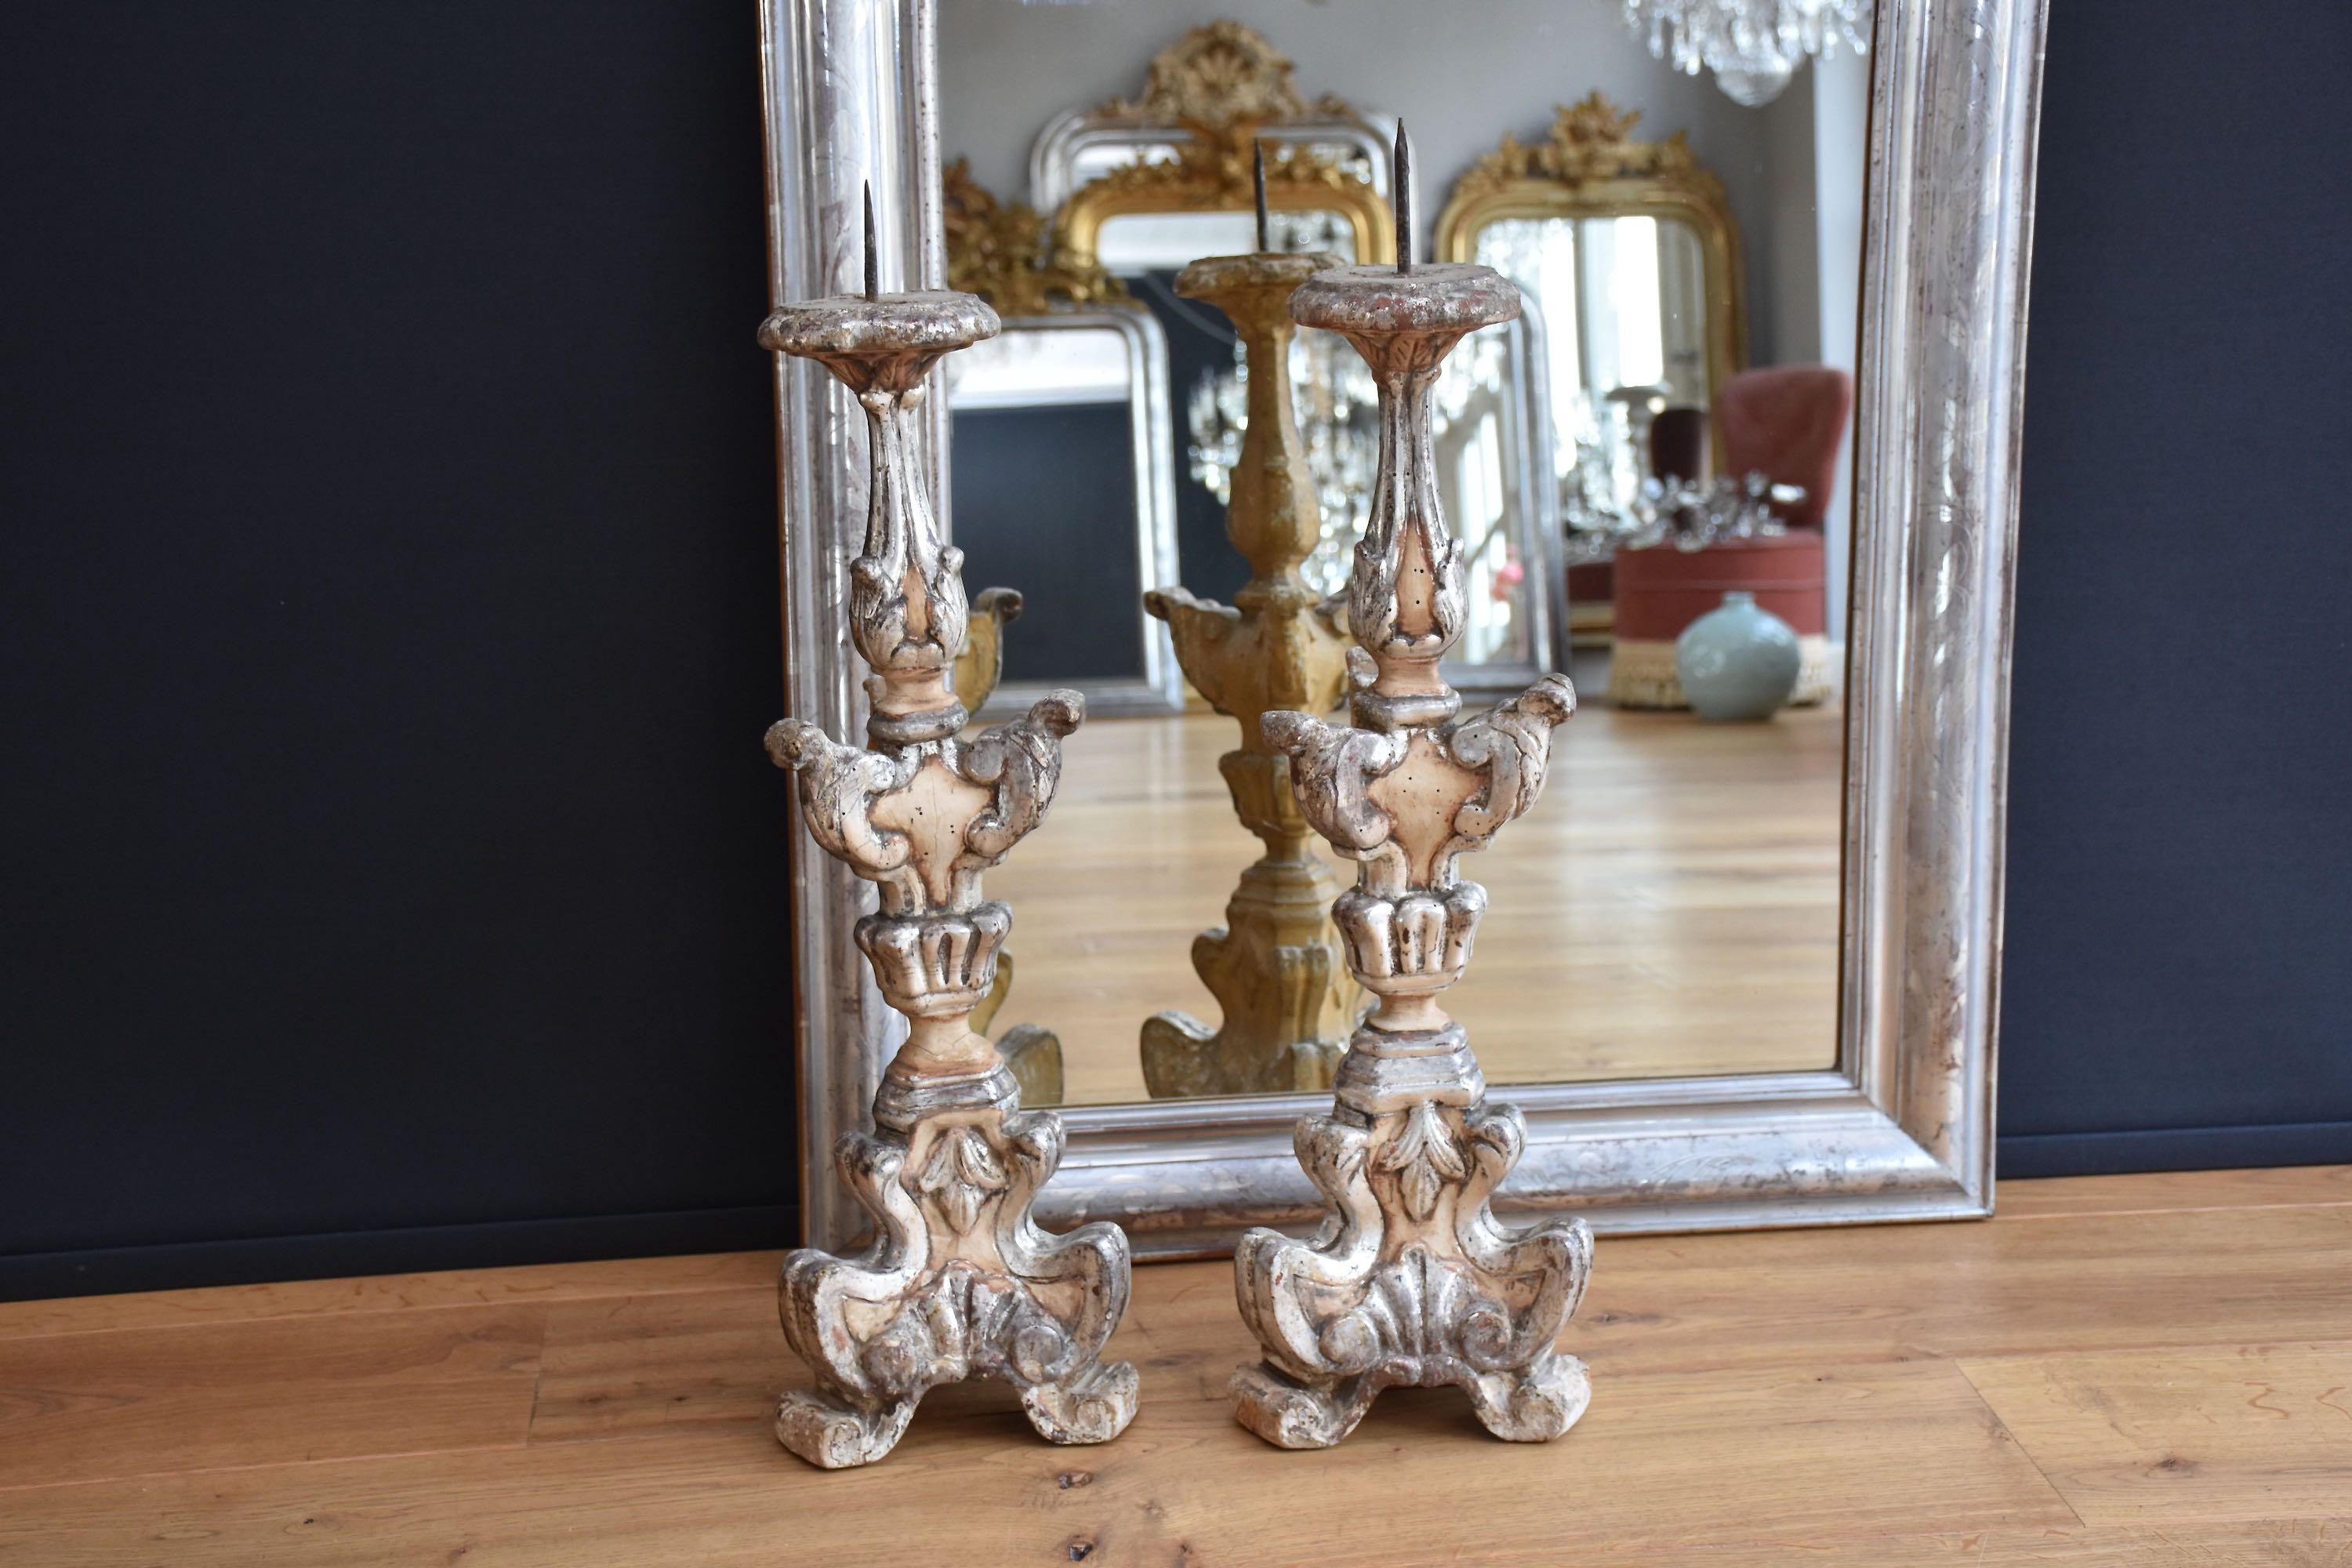 Magnifique paire de torchères italiennes en bois sculpté et doré.
Les torchères sont de couleur crème et présentent une dorure à la feuille d'argent d'origine.
La finition à la feuille d'argent ne se trouve qu'à l'avant des torches.
Les torchères